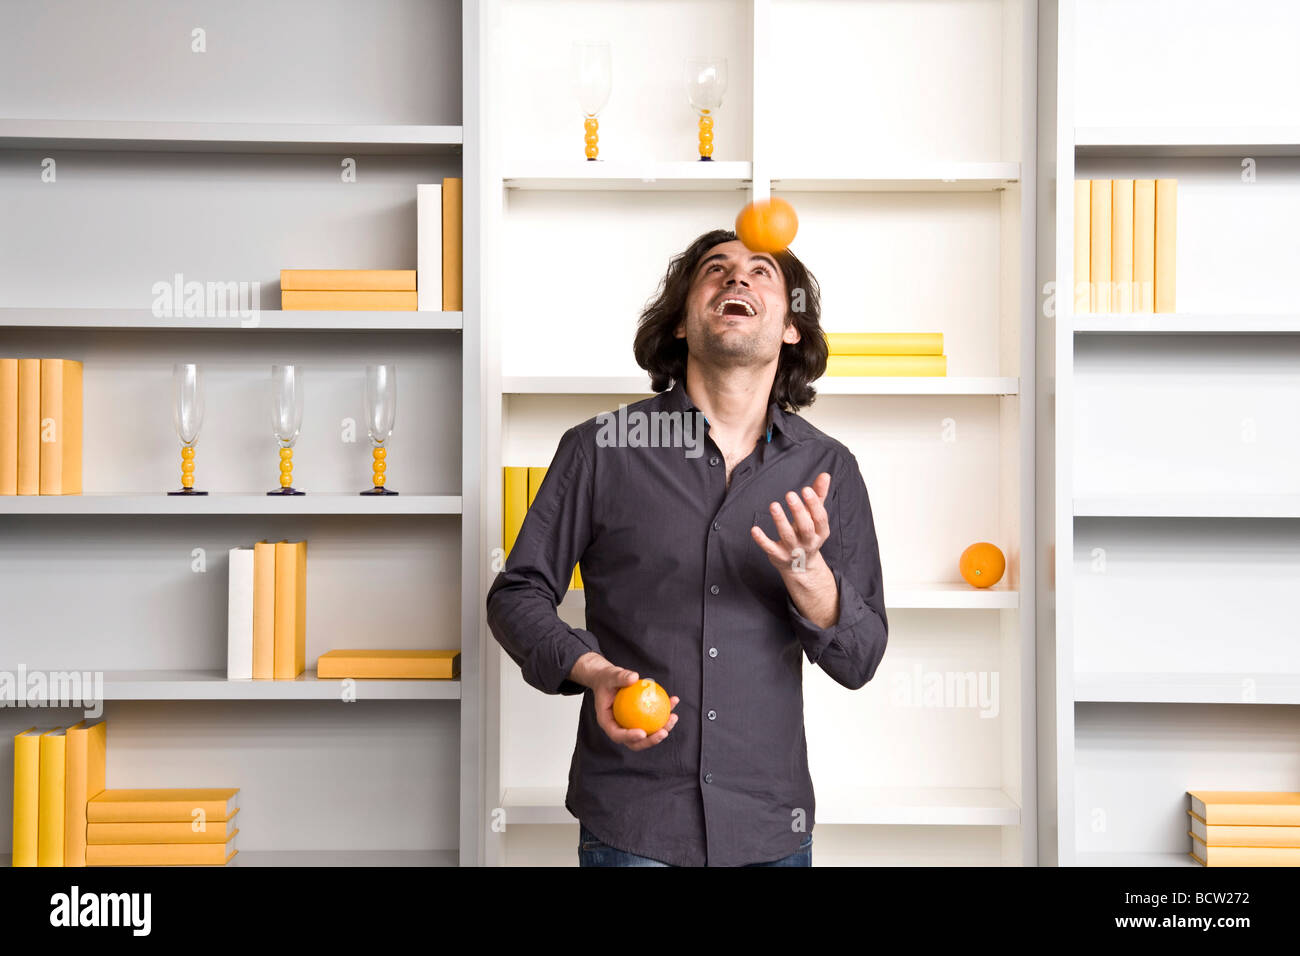 Jeune homme juggling devant une étagère d'un télévision Banque D'Images